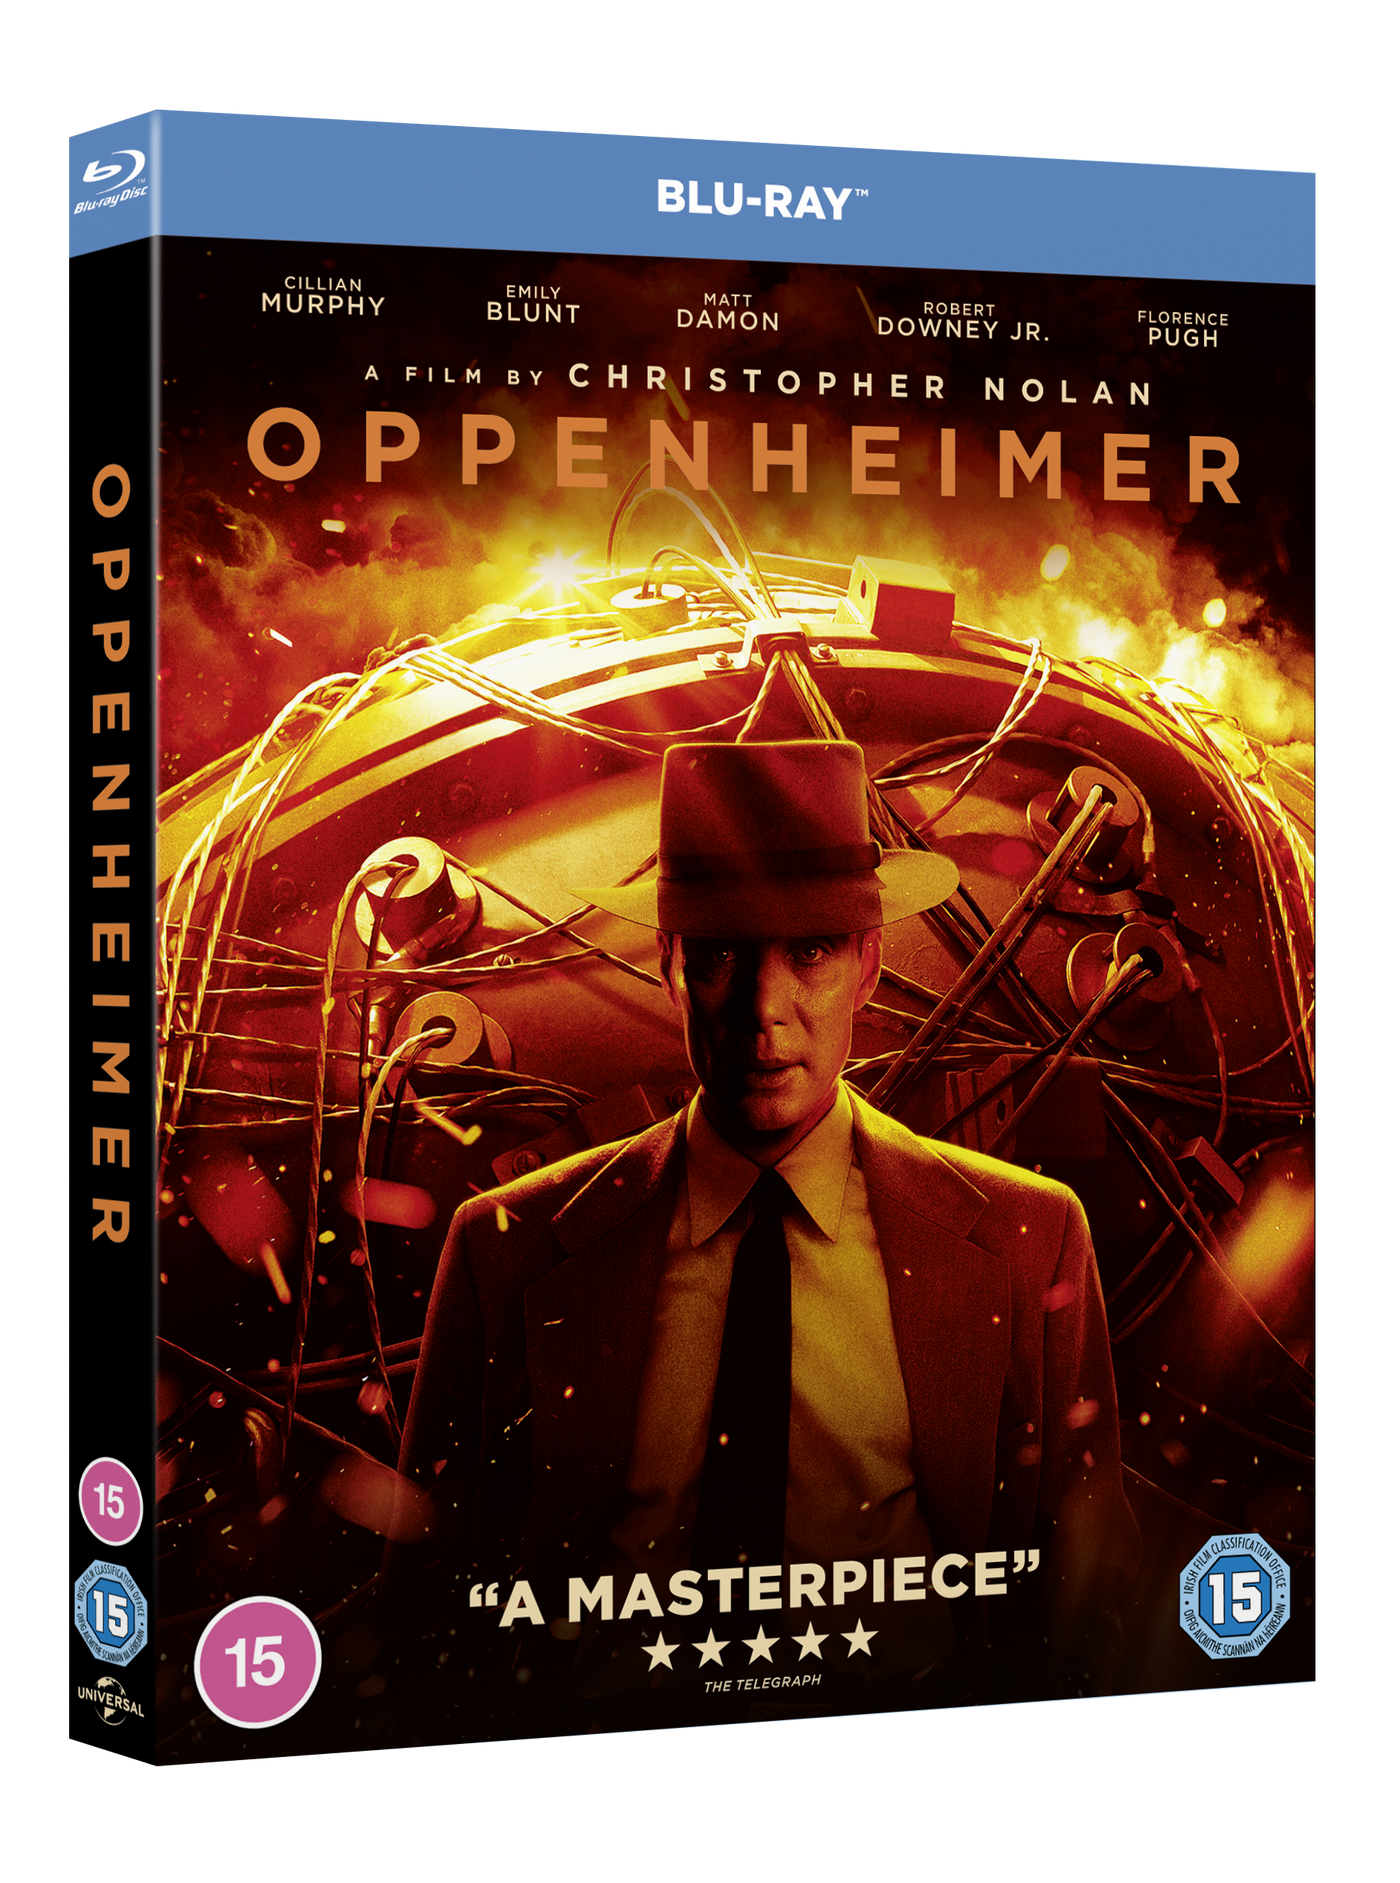 Oppenheimer blu-ray released